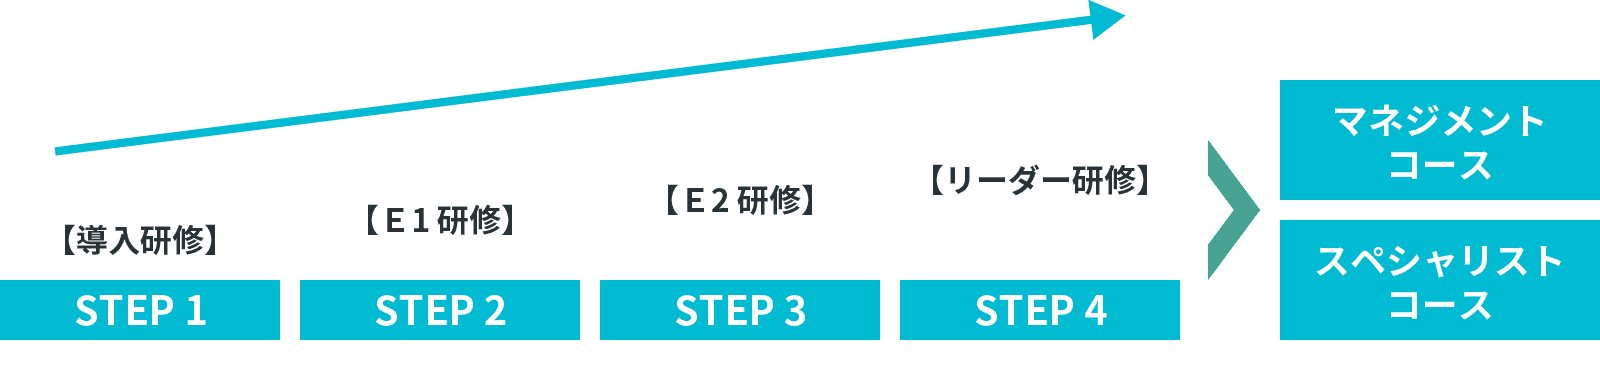 STEP 1【導入研修】 STEP 2【Ｅ1研修】 STEP 3【Ｅ2研修】 STEP 4【リーダー研修】 マネジメントコース スペシャリストコース